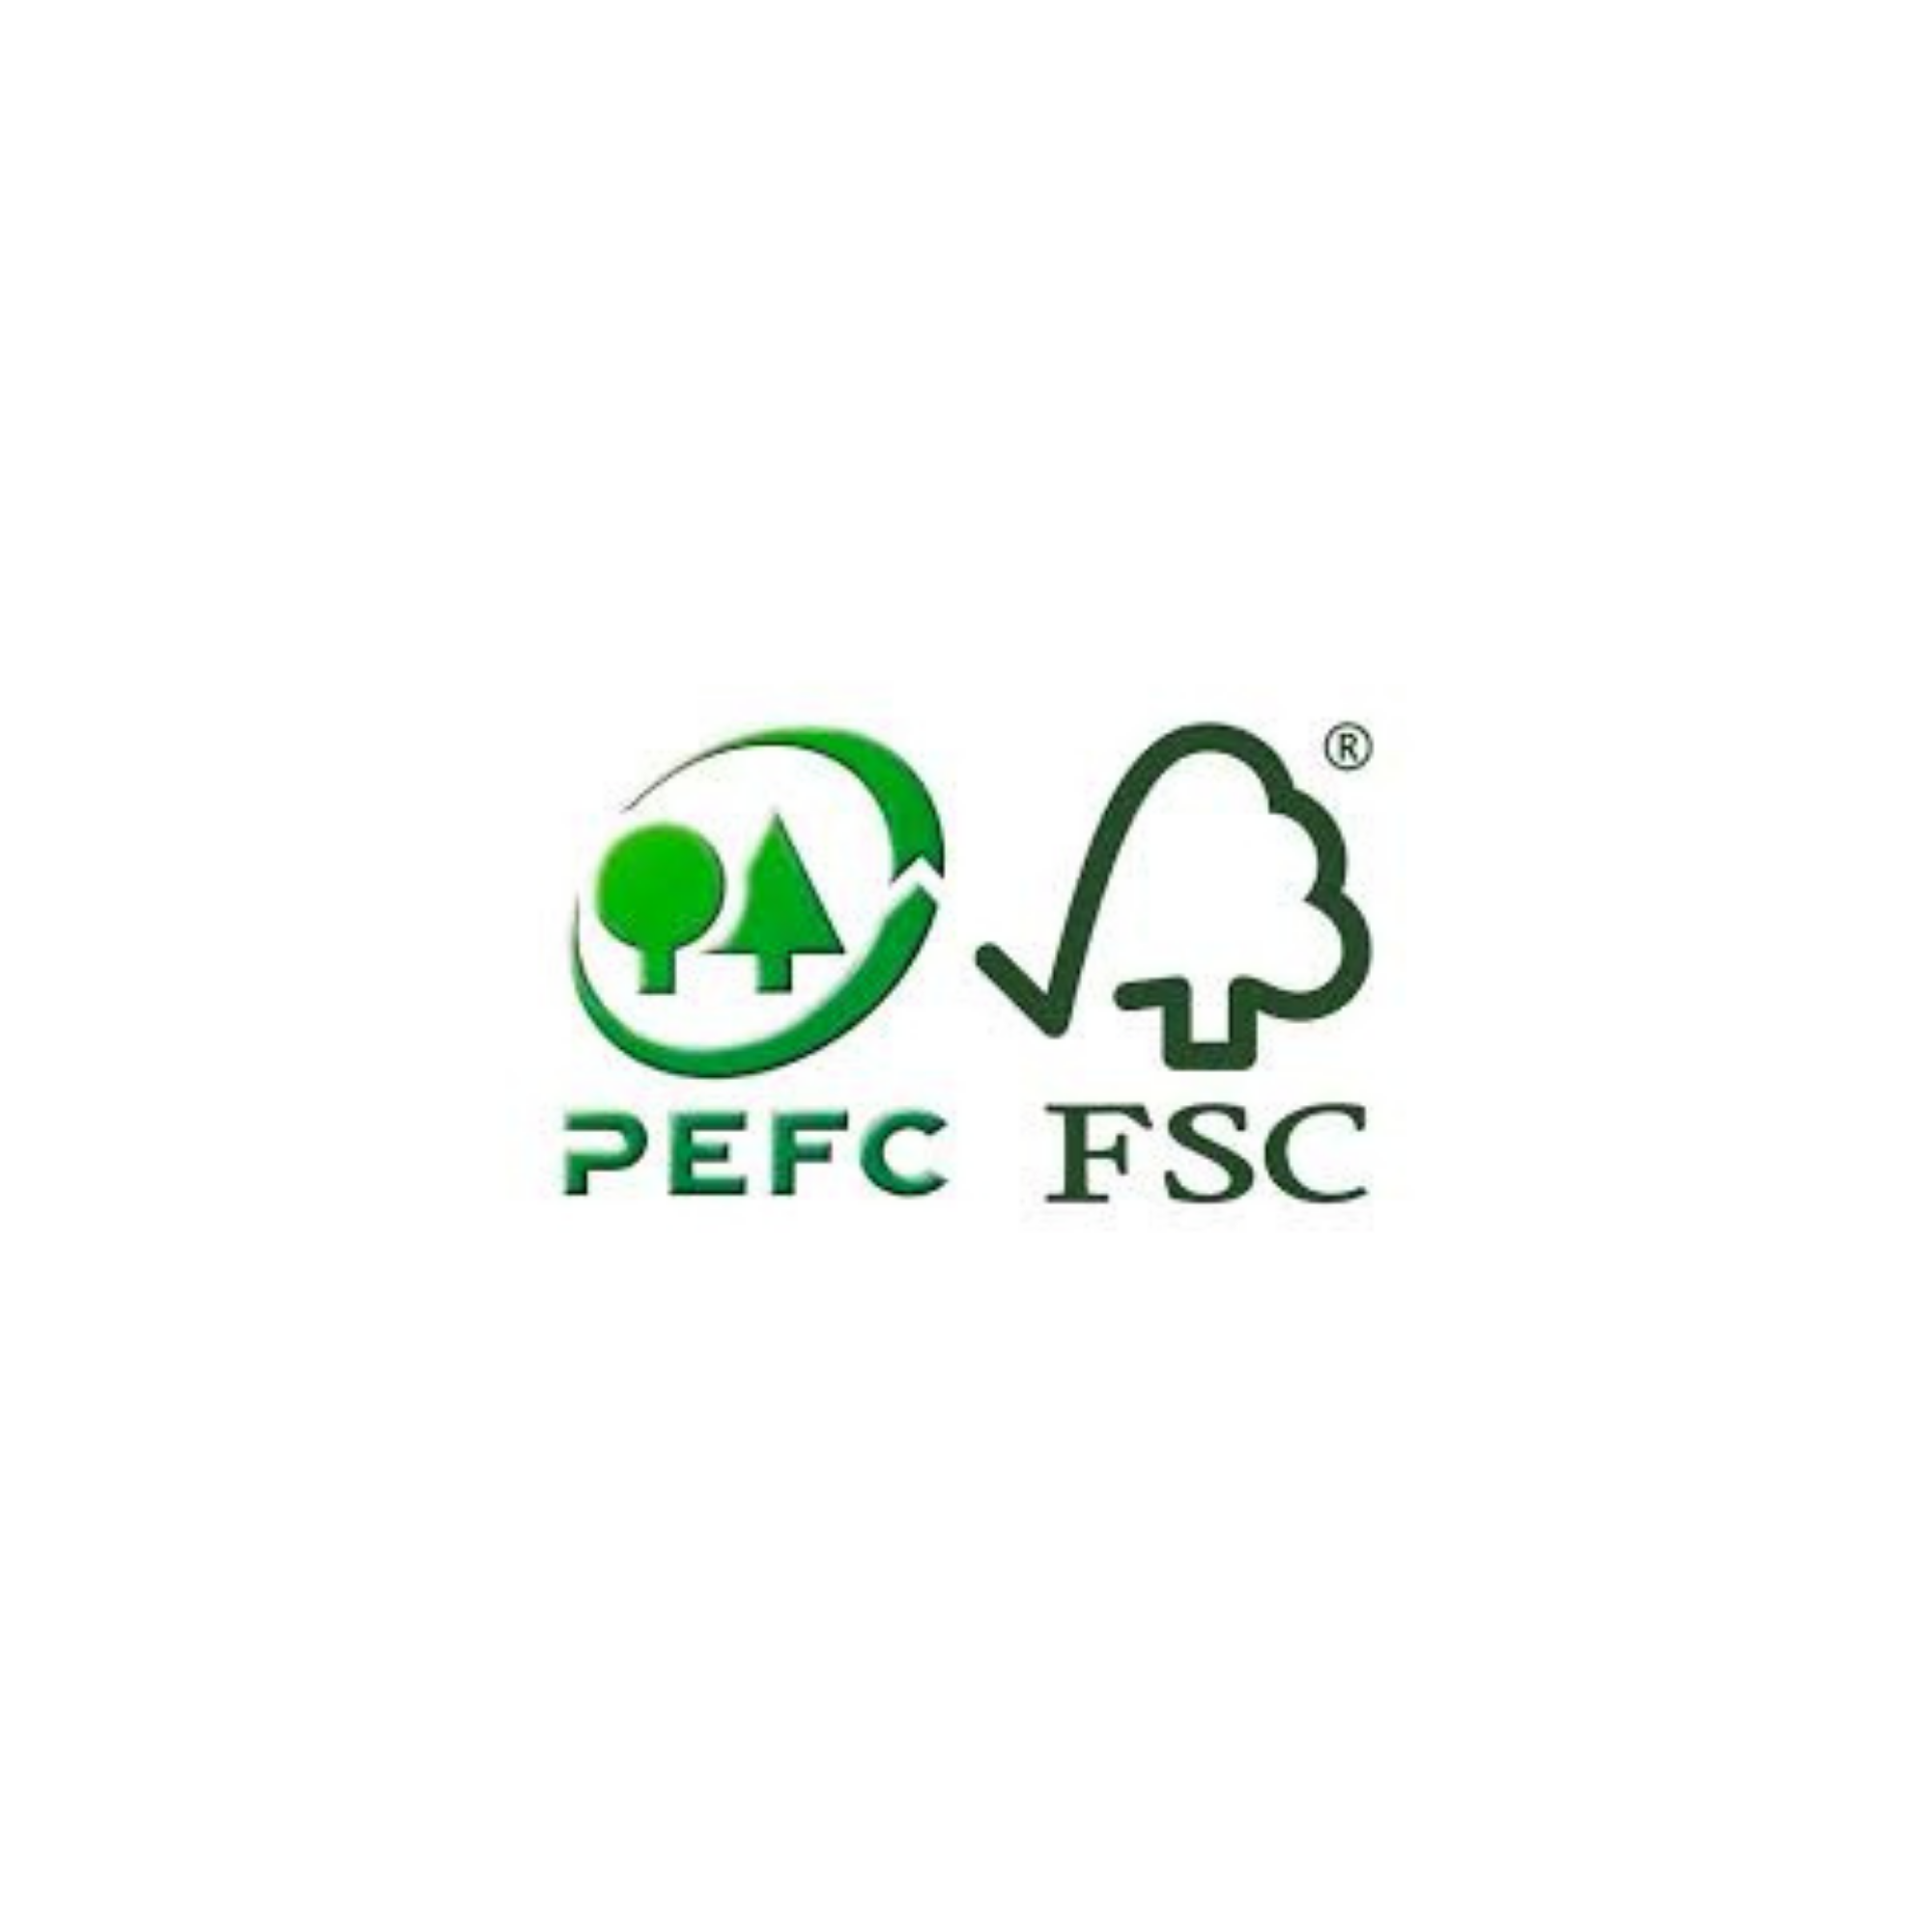 PEFC FSC